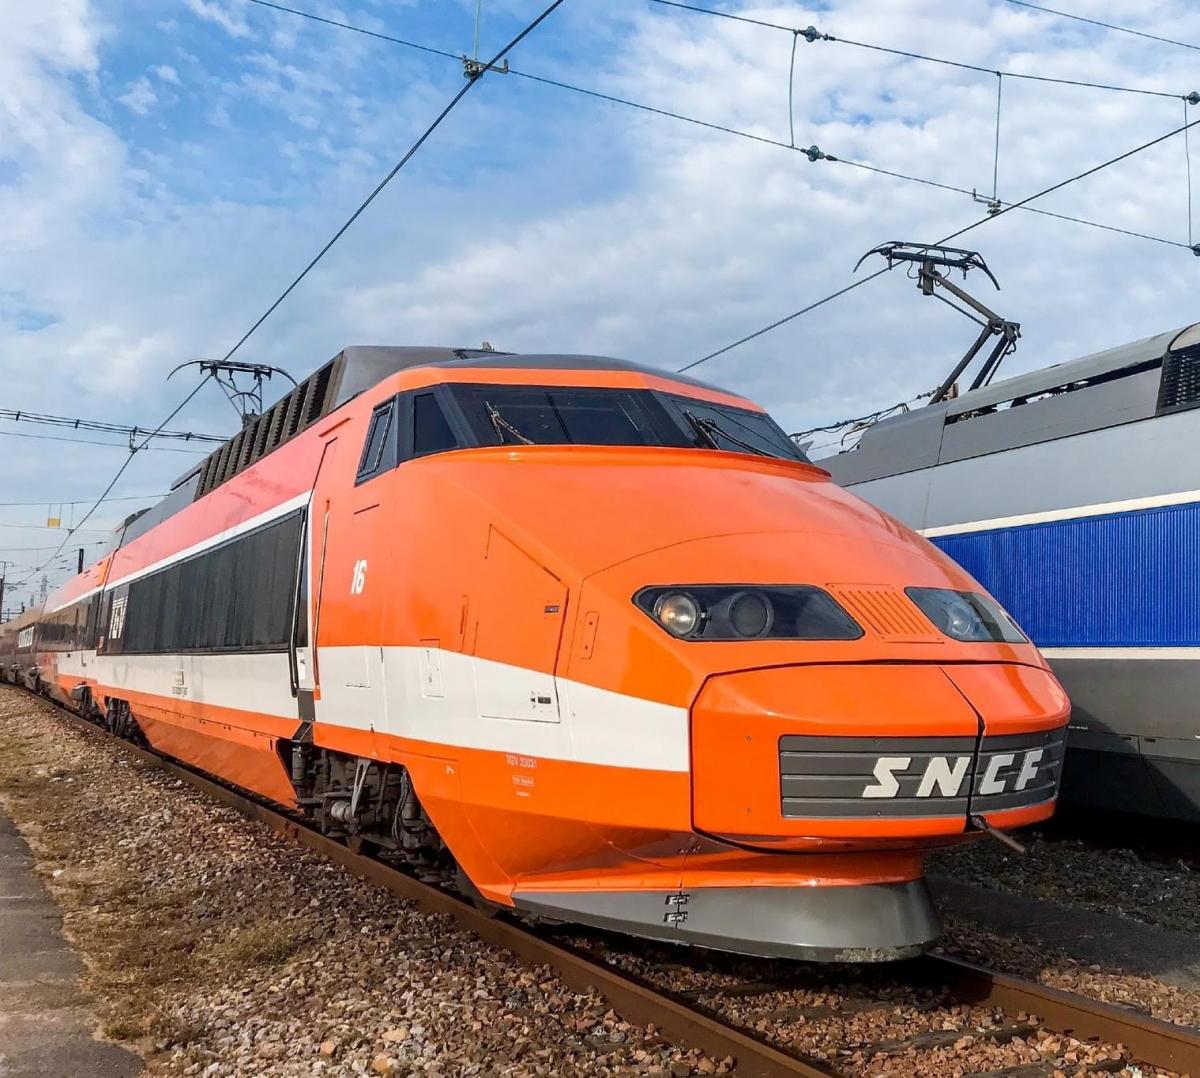 Víme první: Legendární rychlovlak TGV projede centrem Brna v pondělí 6. června před půlnocí!